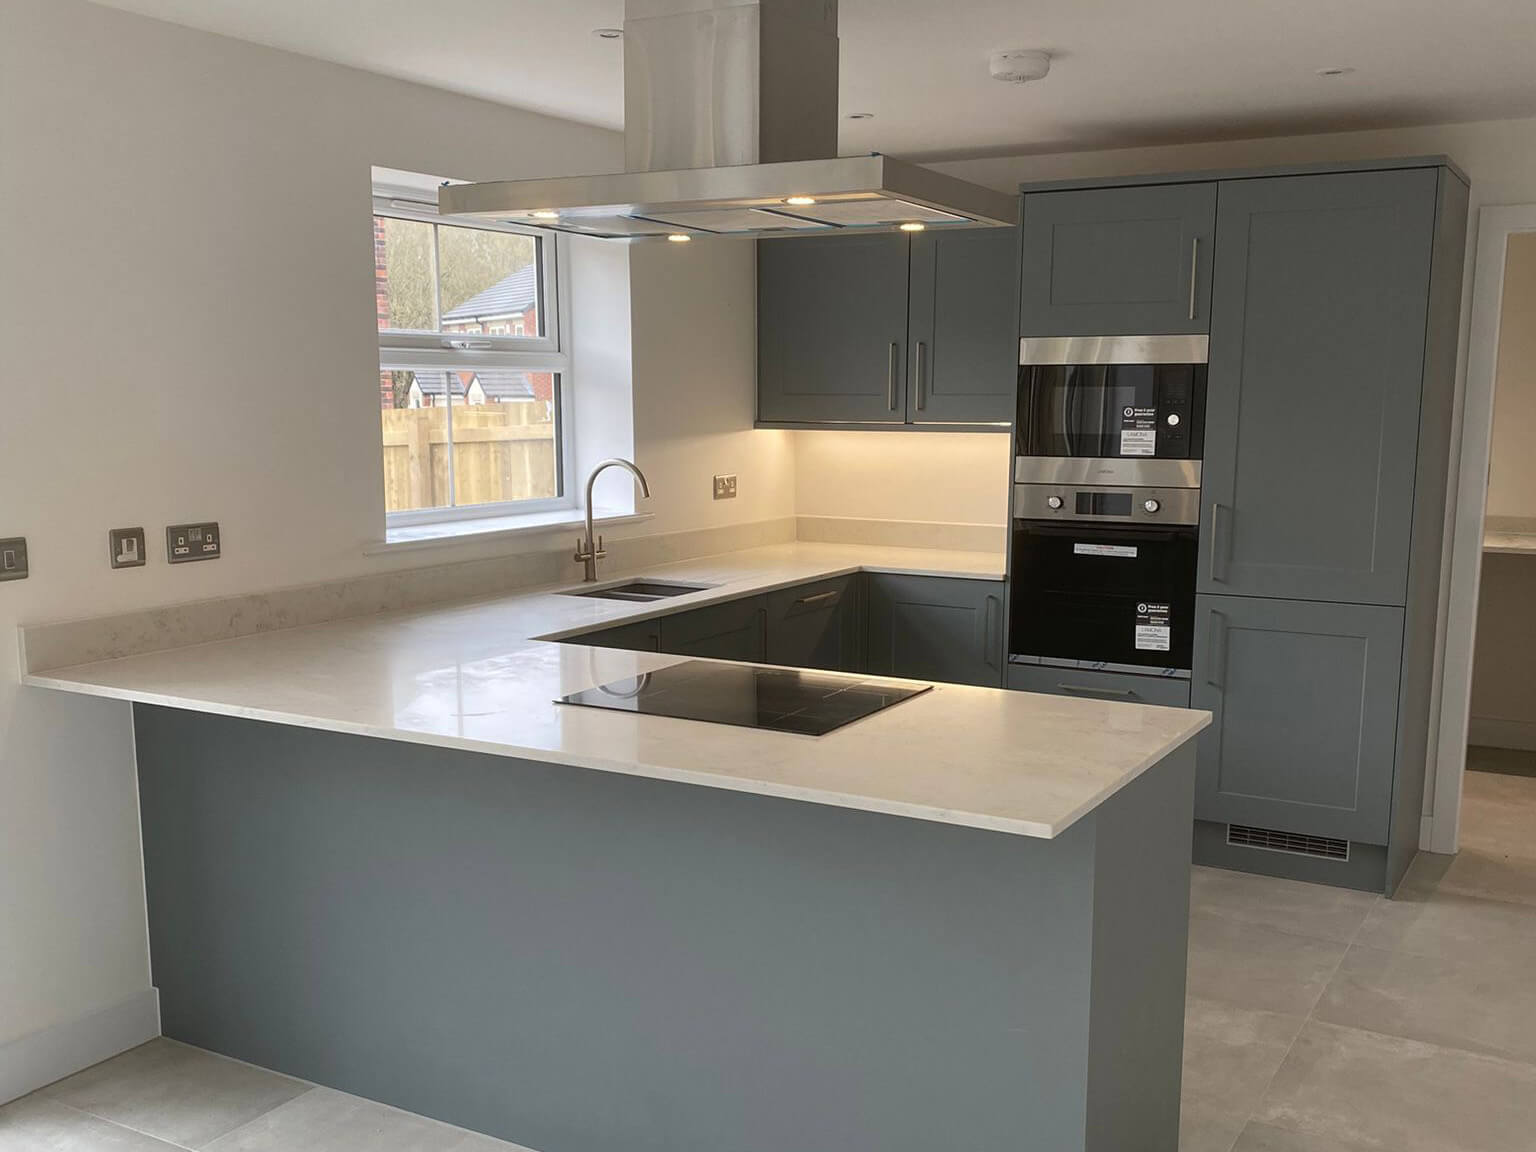 PD Granite Doncaster Carrara Quartz Kitchen Worktops